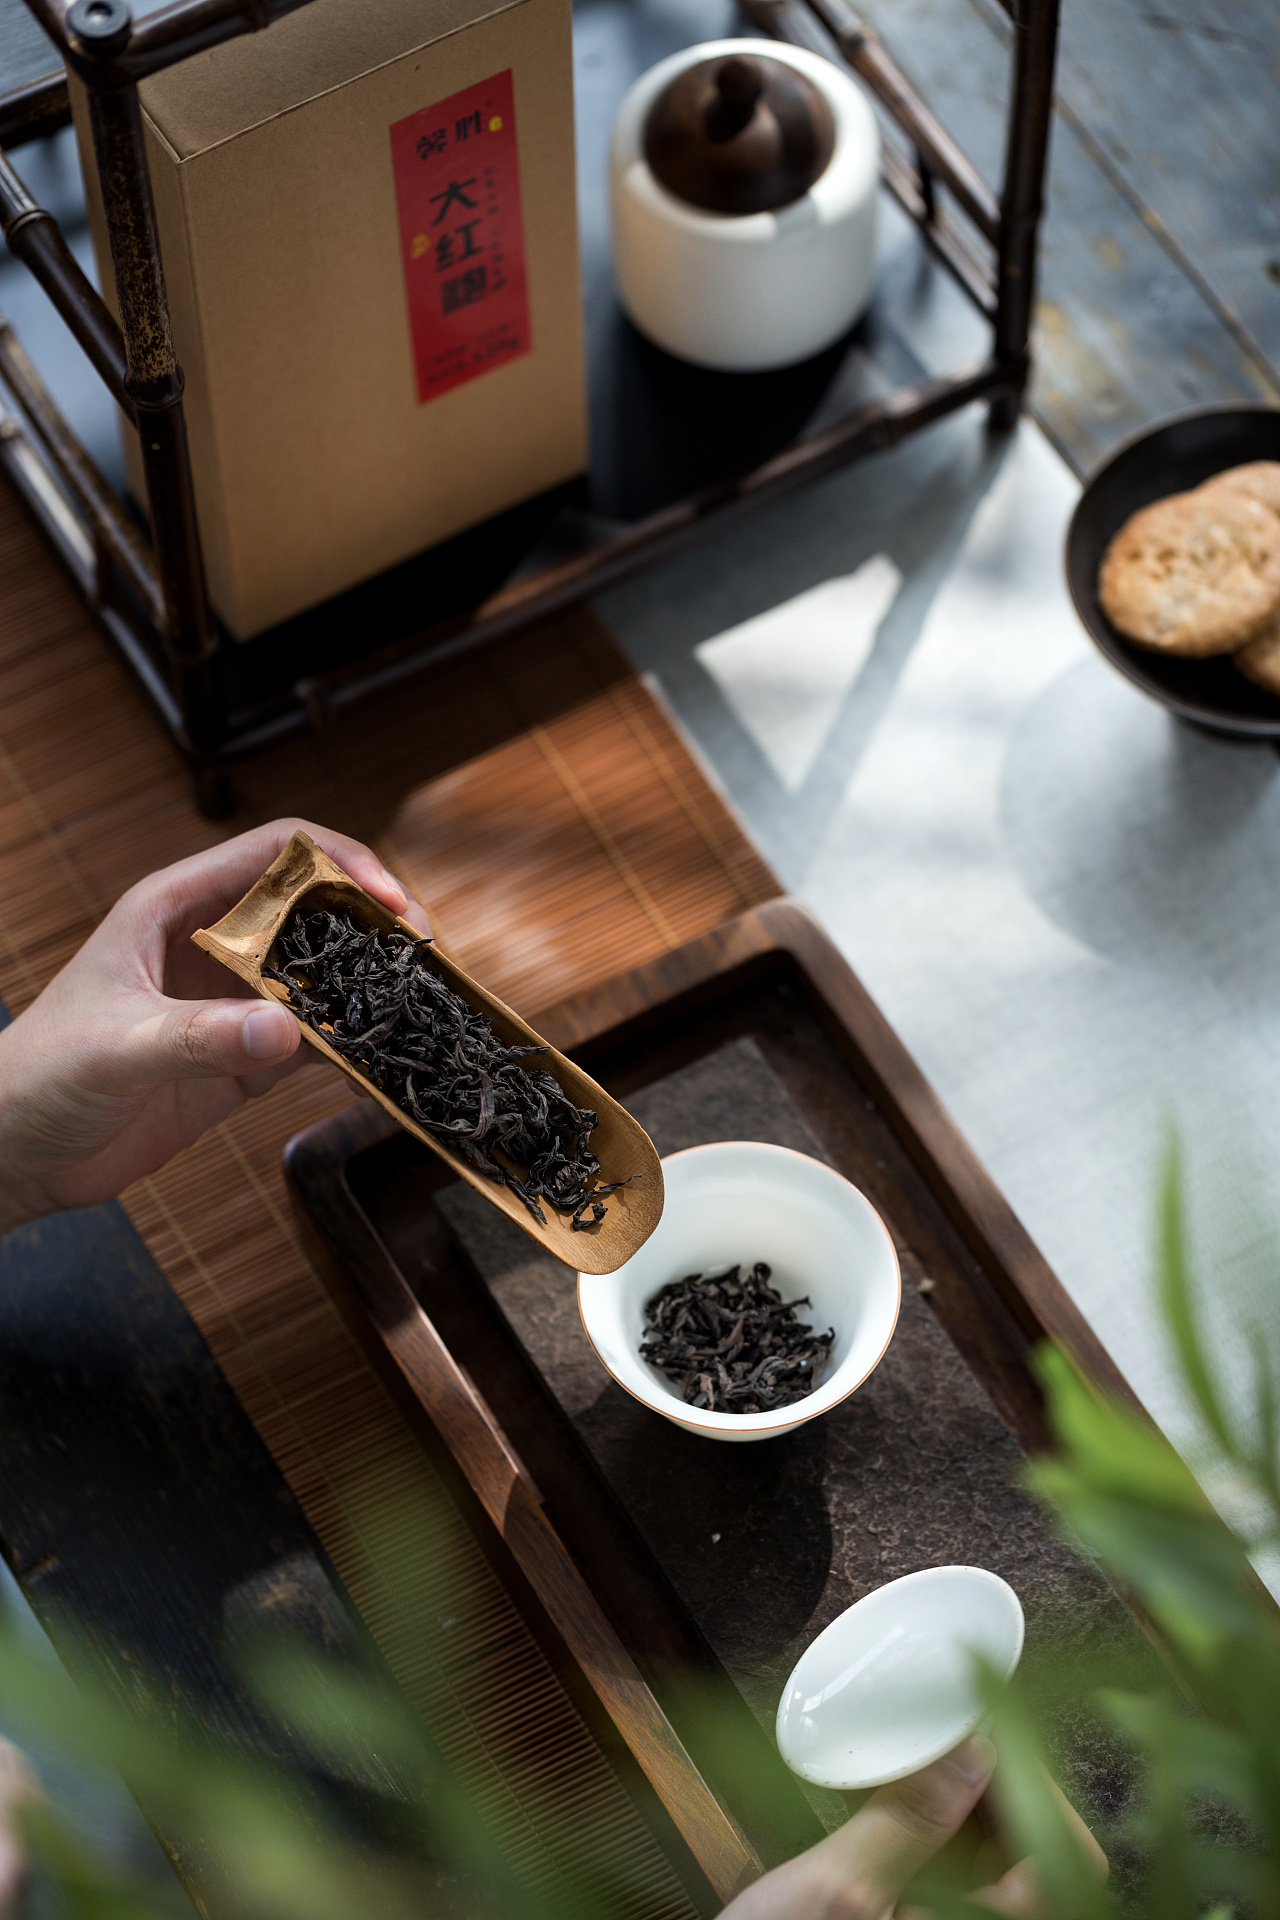 武夷岩茶十大品牌大红袍属于什么茶 大红袍的滋味口感和香气描述 中国咖啡网 06月05日更新